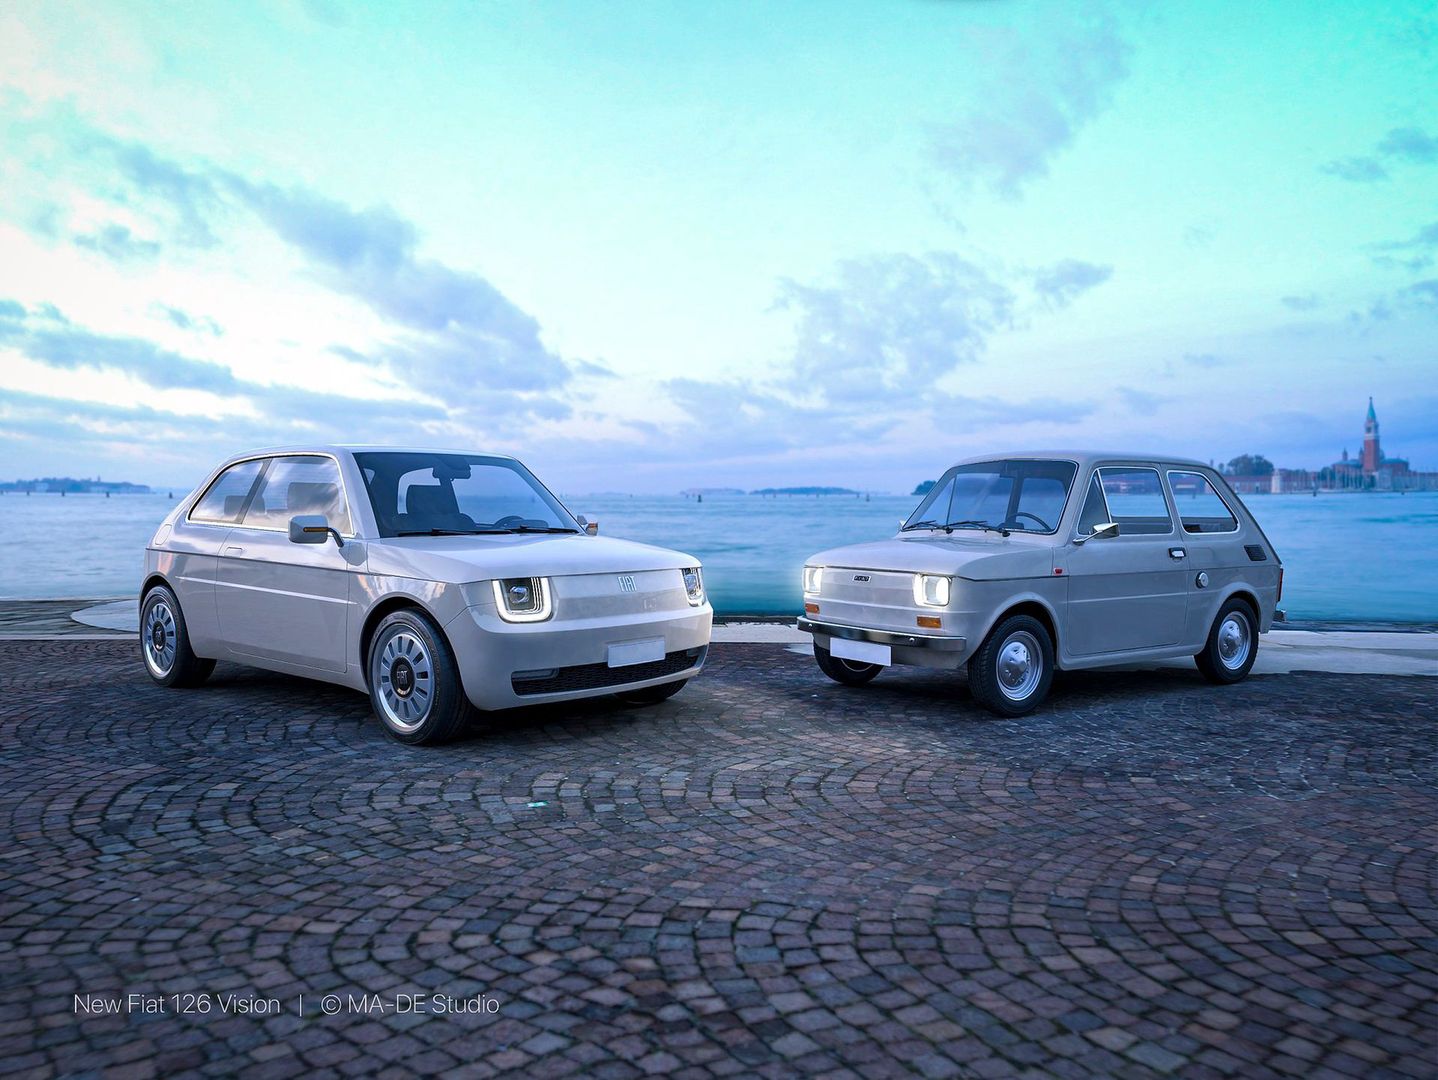 Włoch zaprojektował współczesną wizję Fiata 126. Wygląda fantastycznie